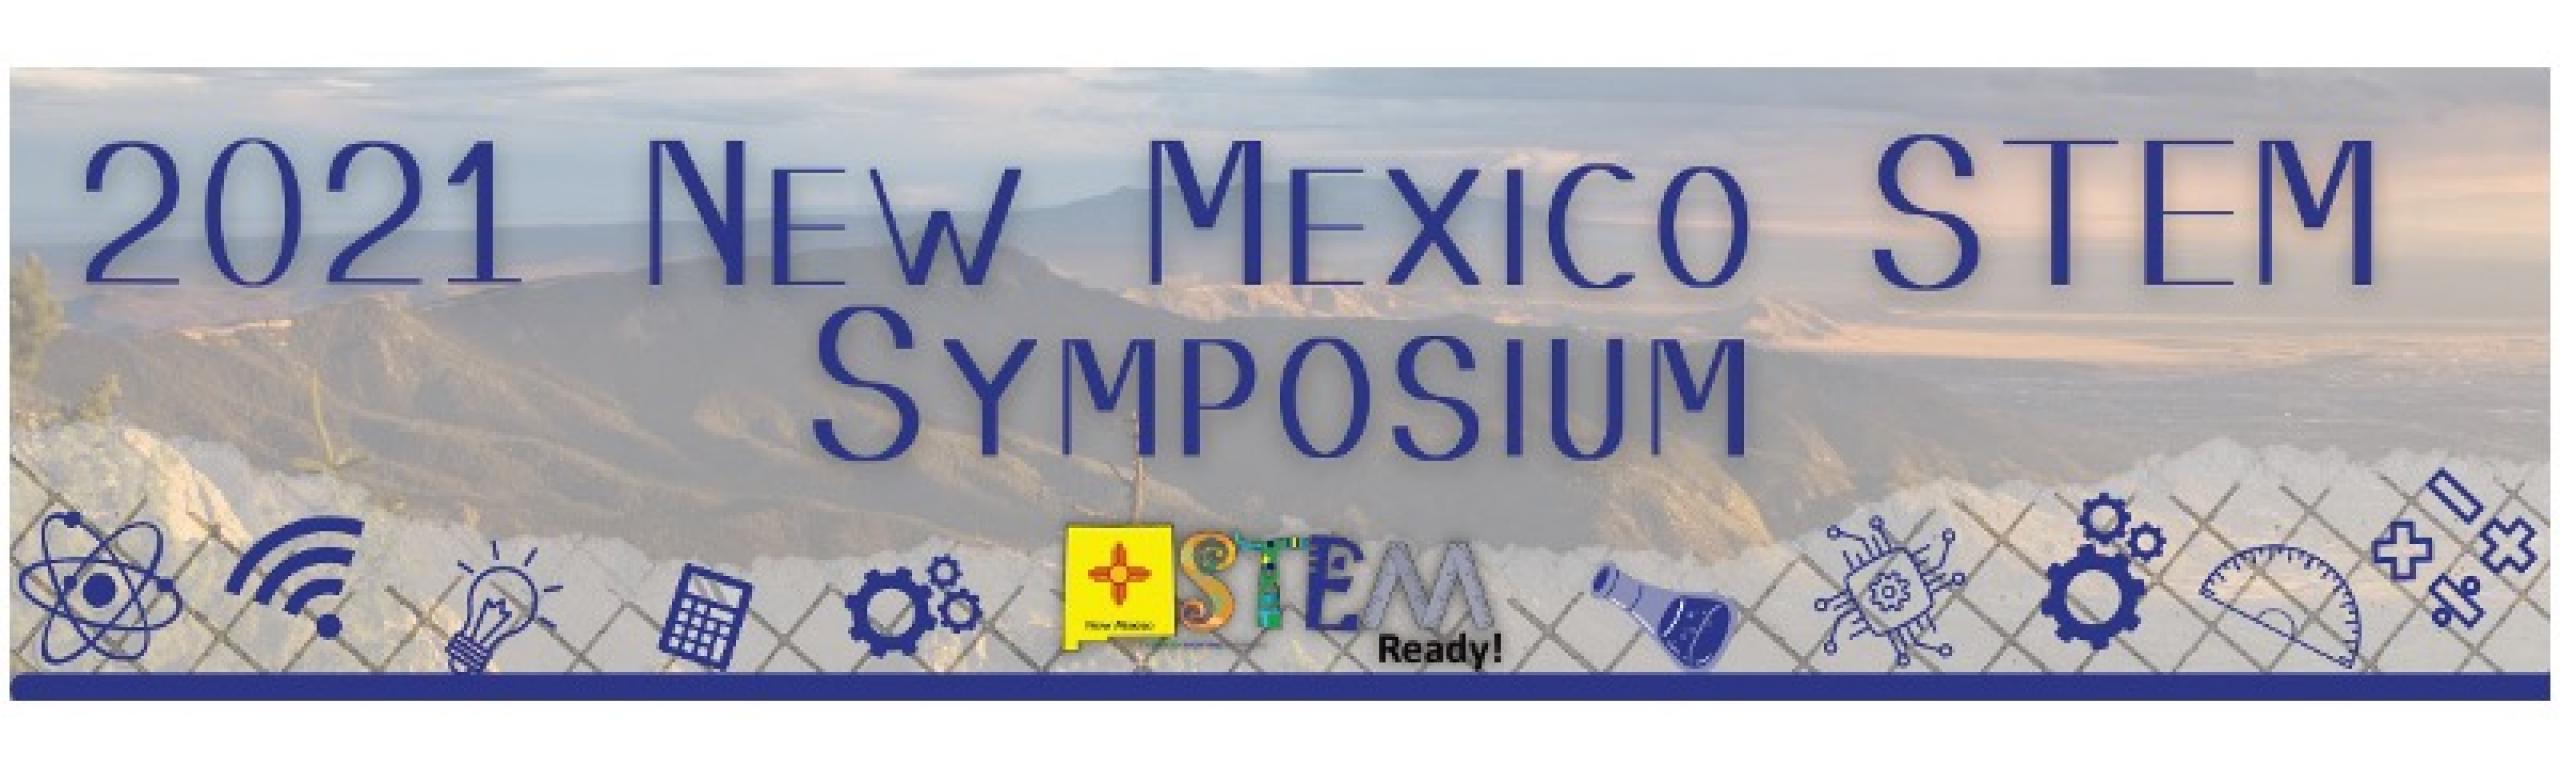 2021 New Mexico STEM Symposium logo